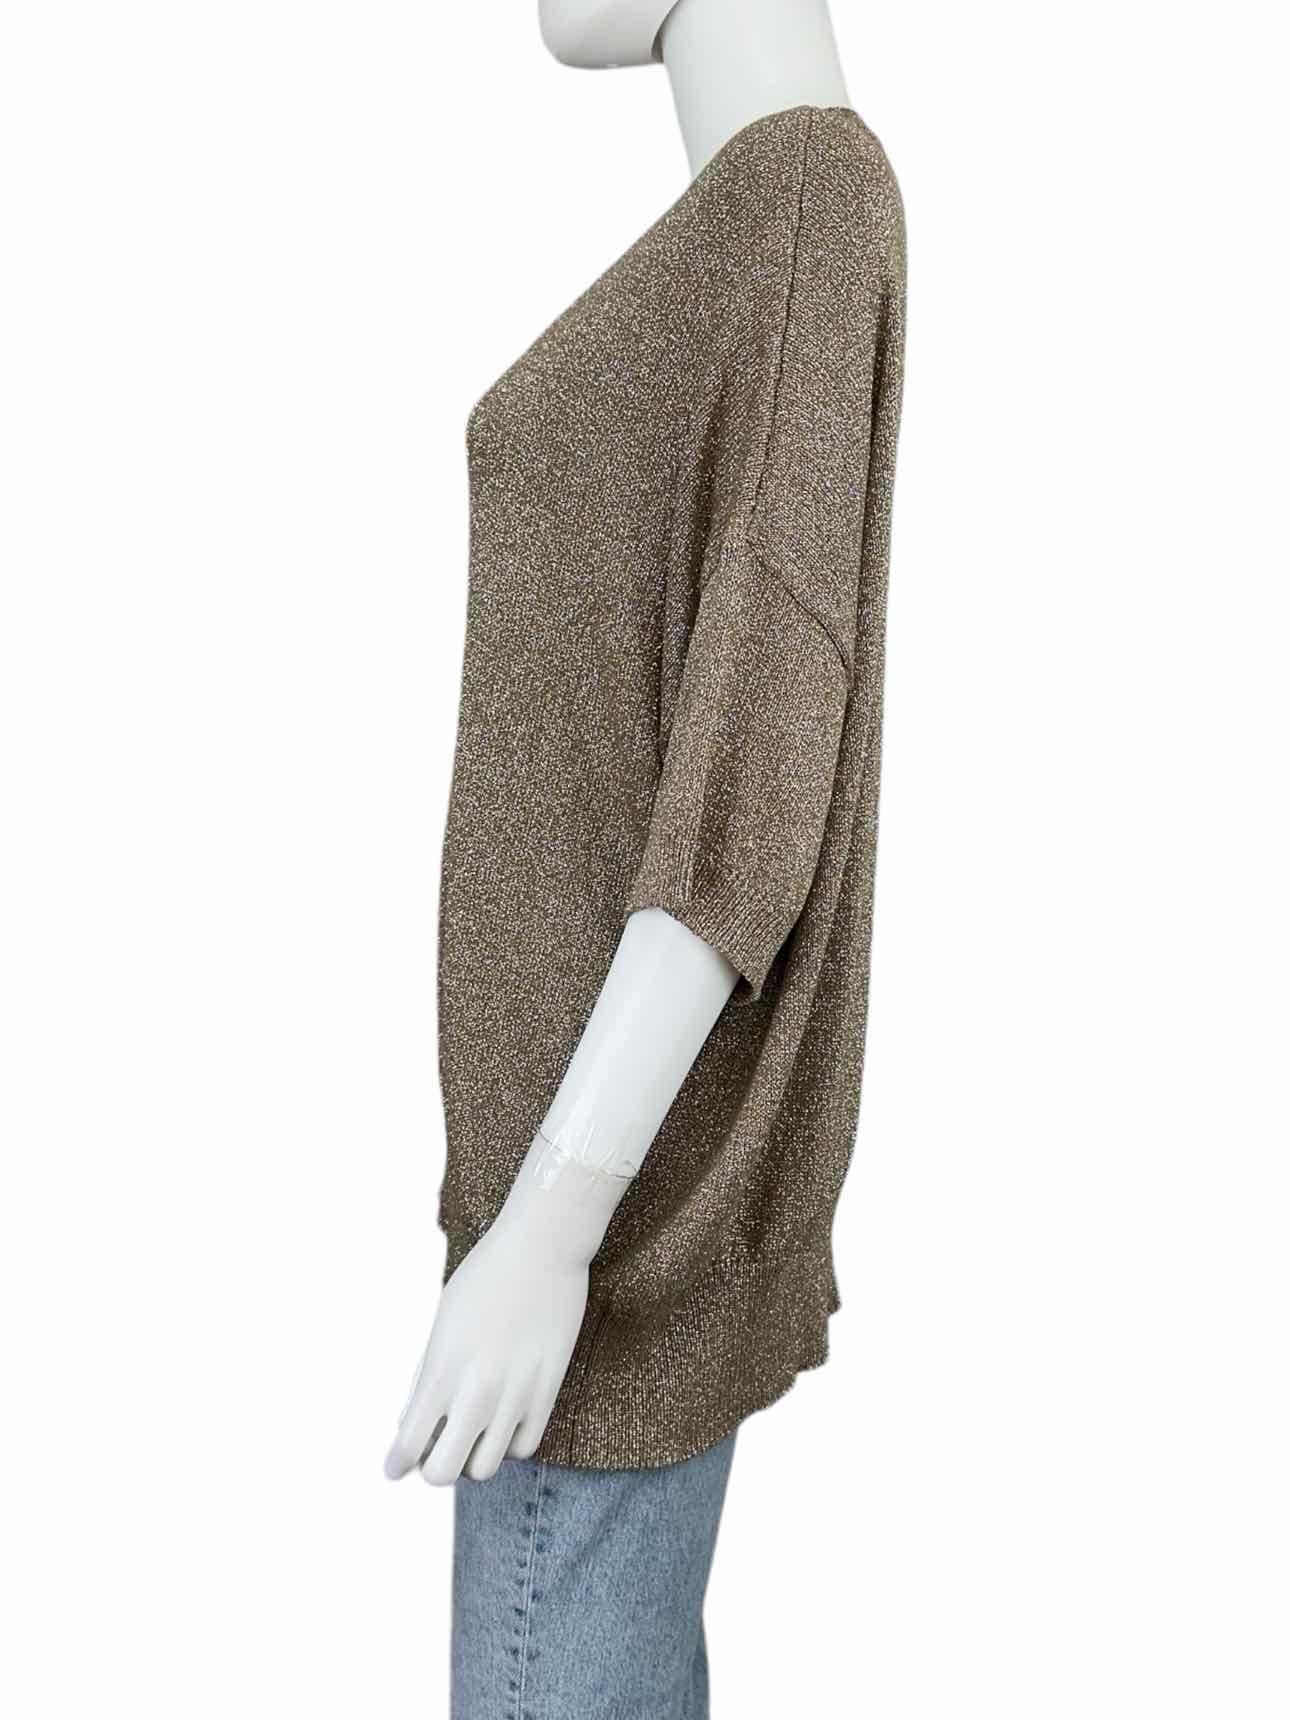 MARELLA monochrome Tan & Silver Shimmer Sweater Size XL